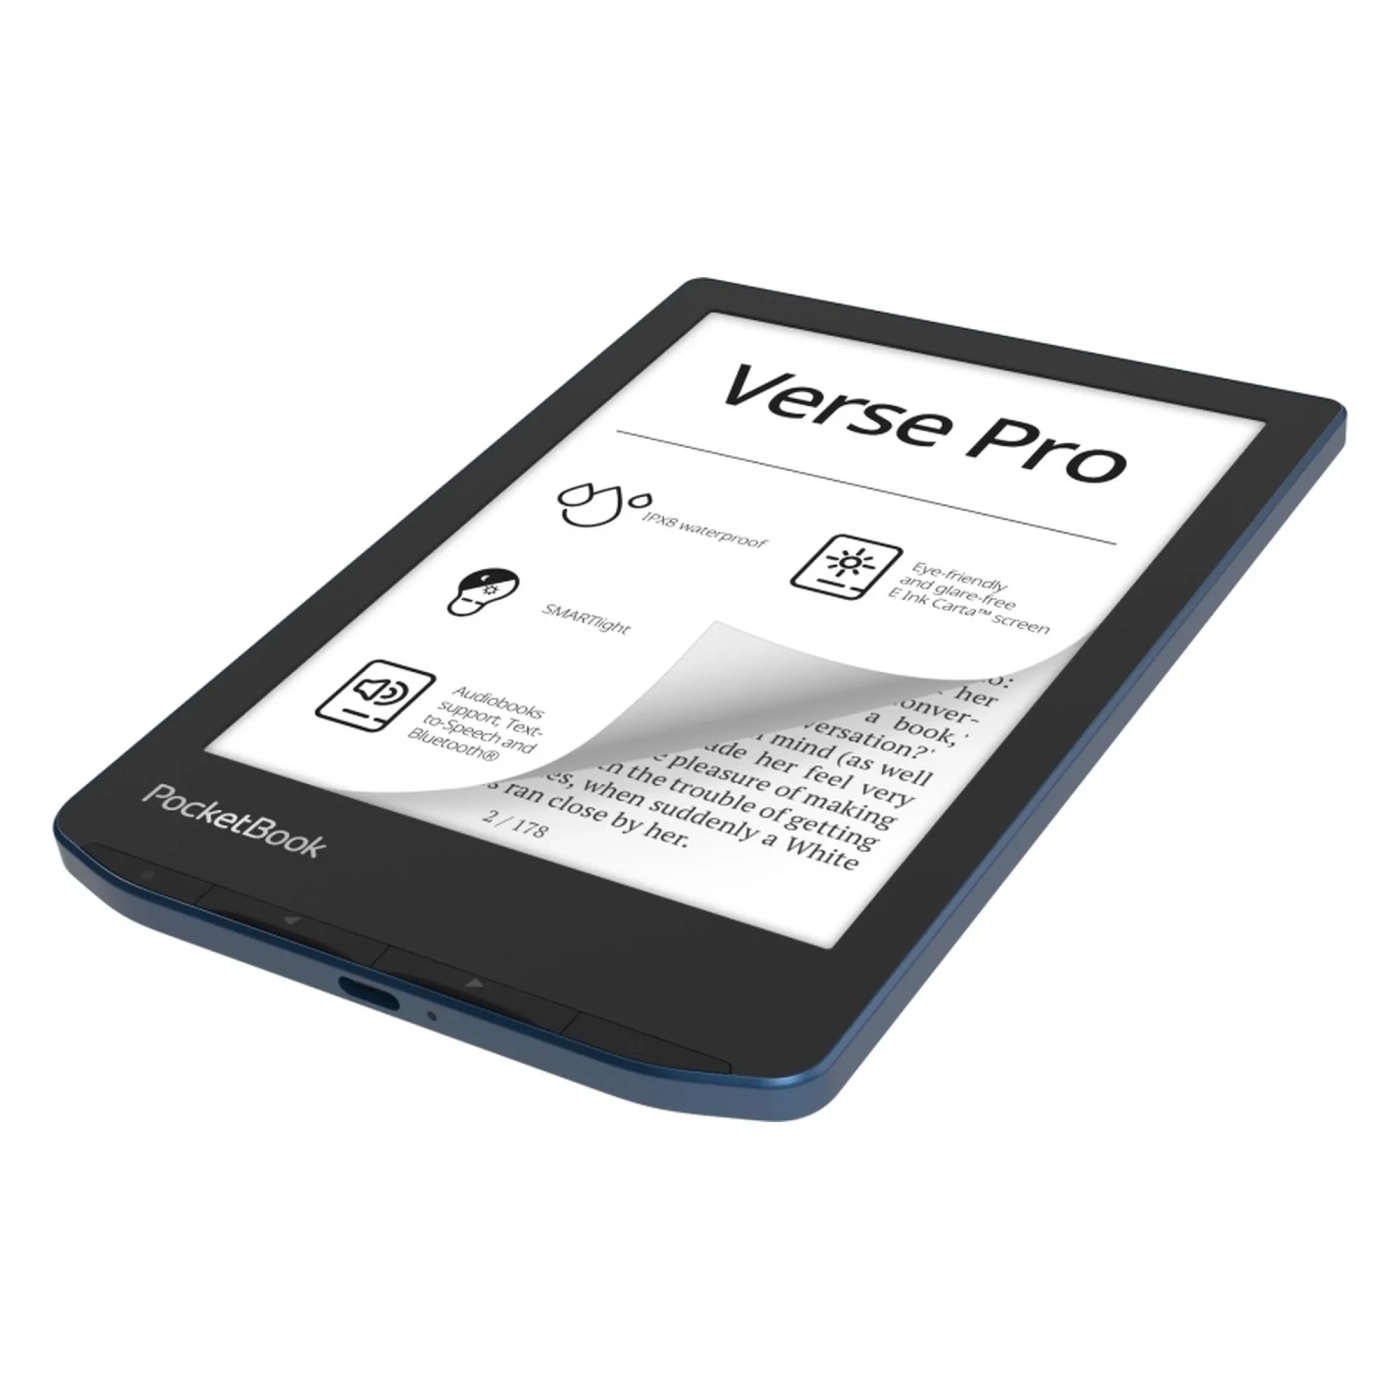 Купить Электронная книга PocketBook 634 Verse Pro, Azure - фото 3